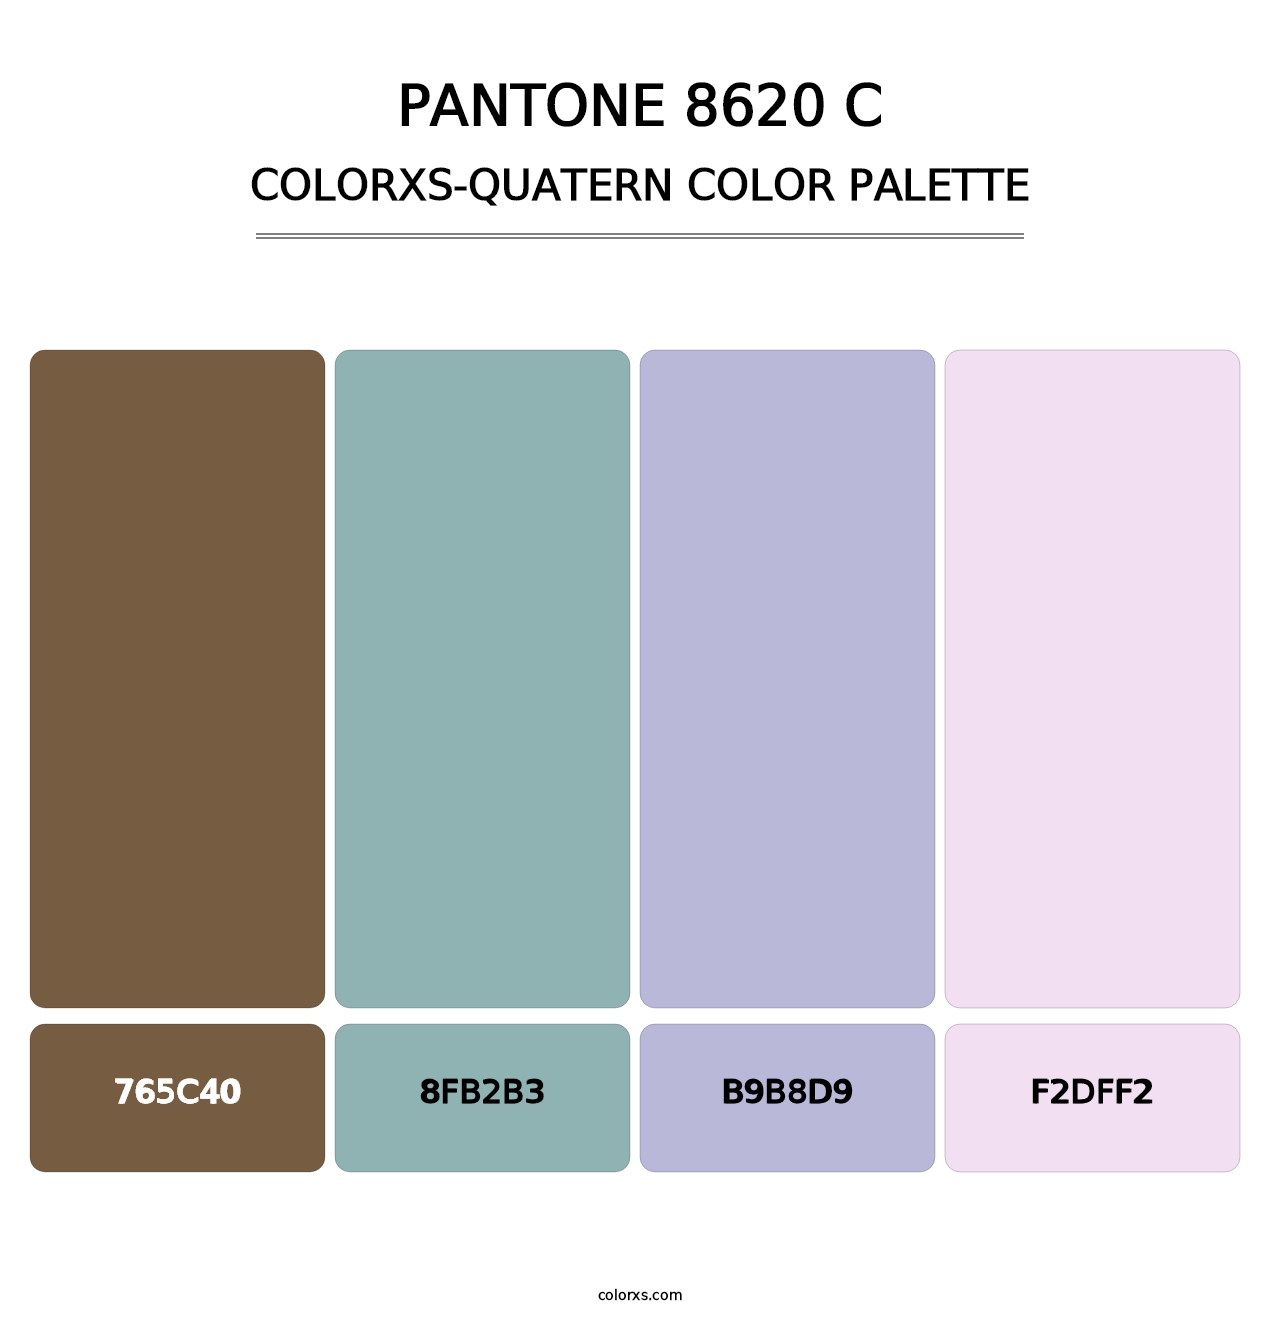 PANTONE 8620 C - Colorxs Quatern Palette